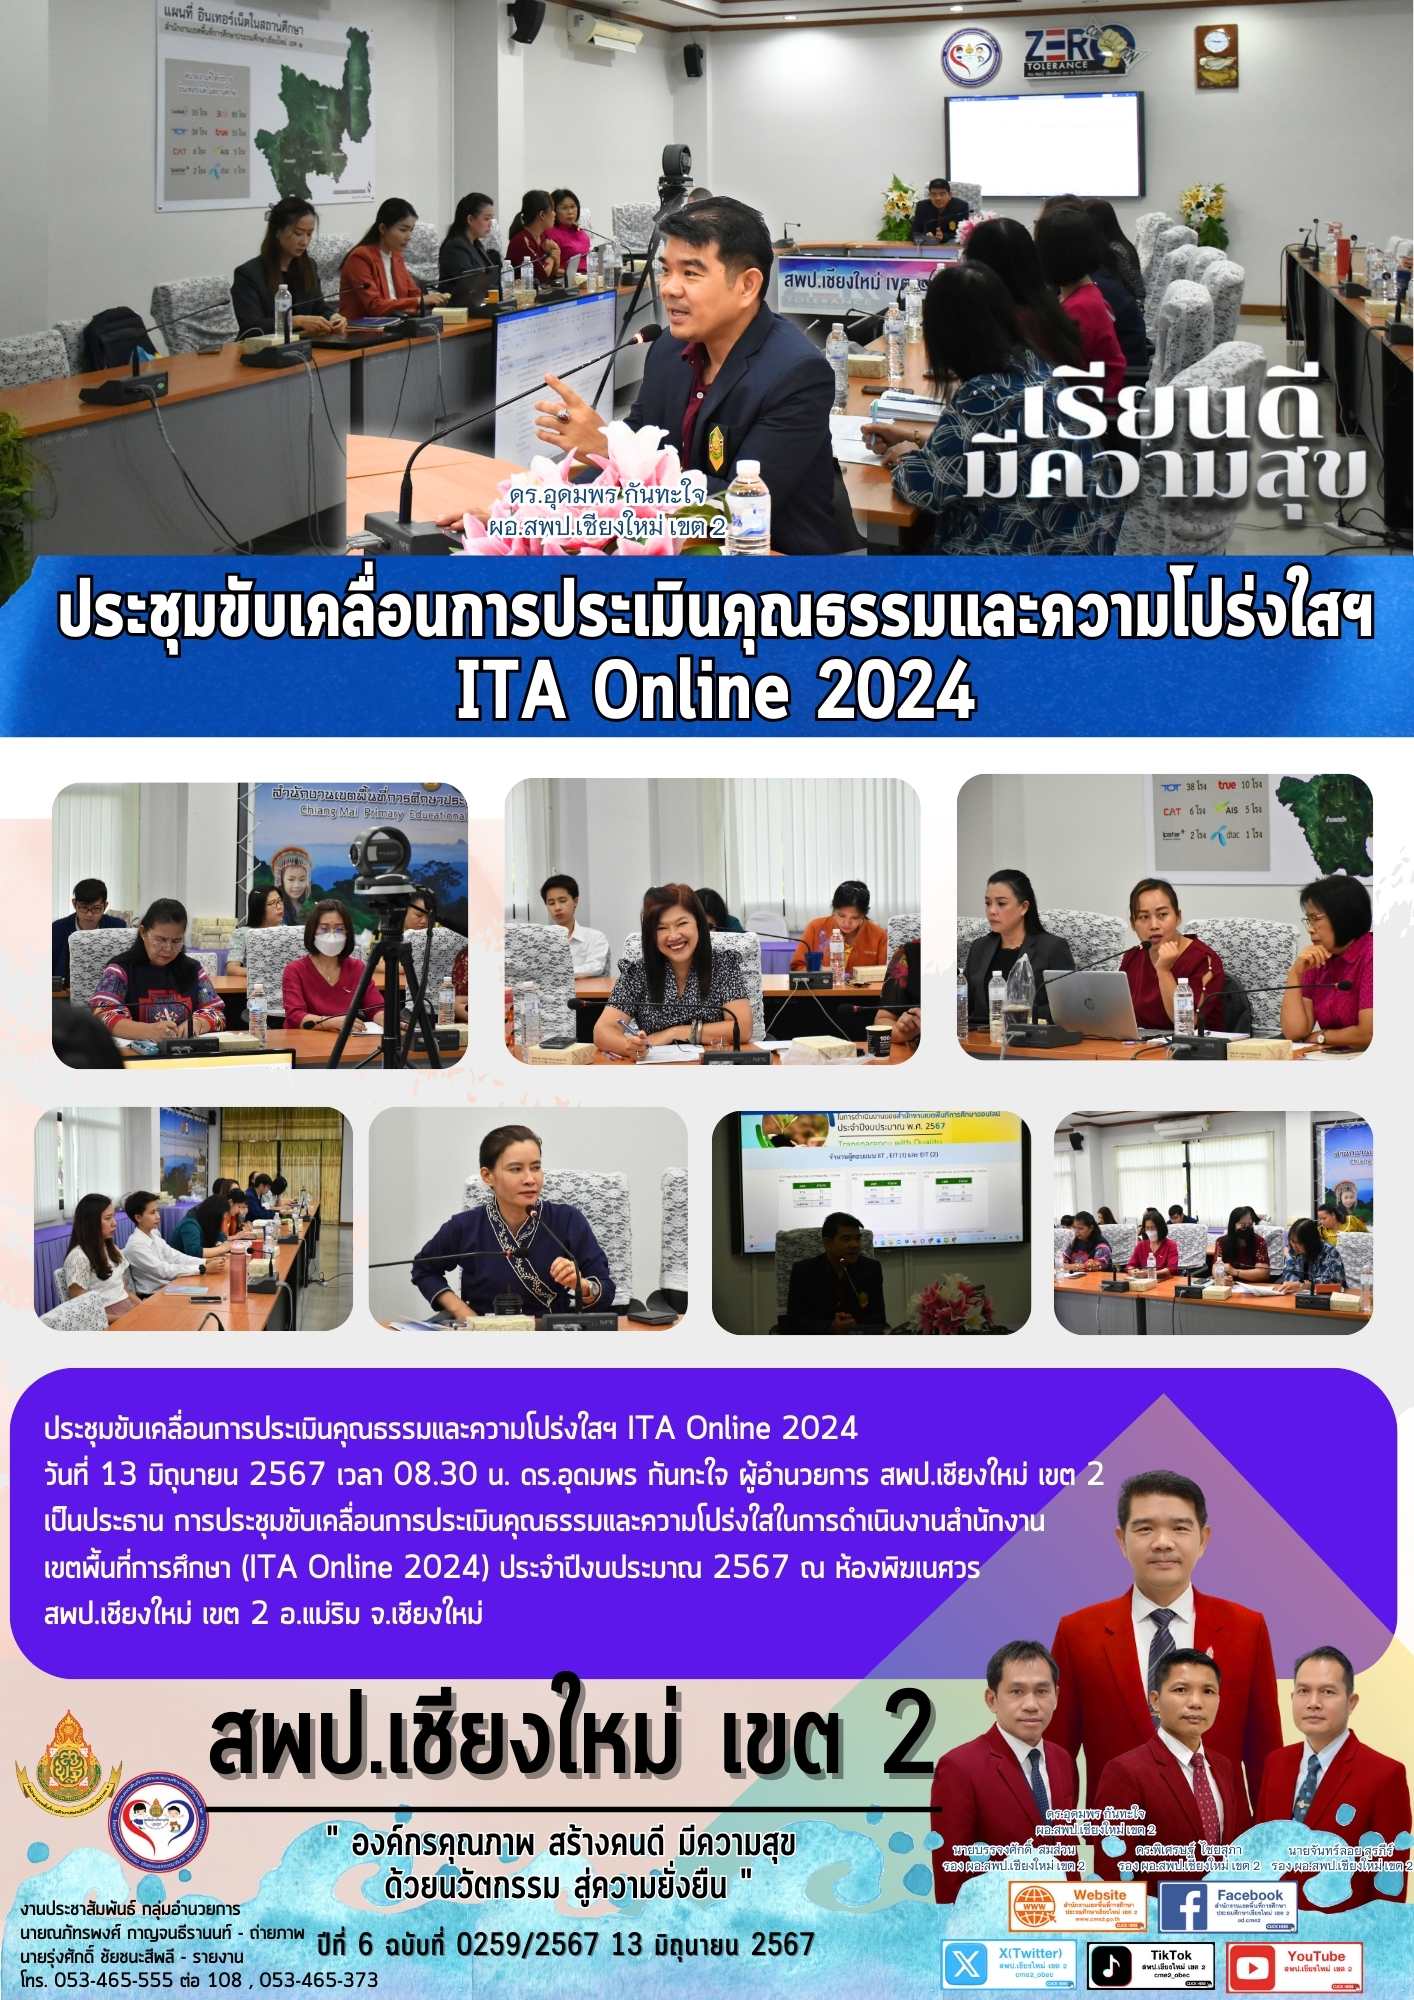 ประชุมขับเคลื่อนการประเมินคุณธรรมและความโปร่งใสฯ ITA Online 2024